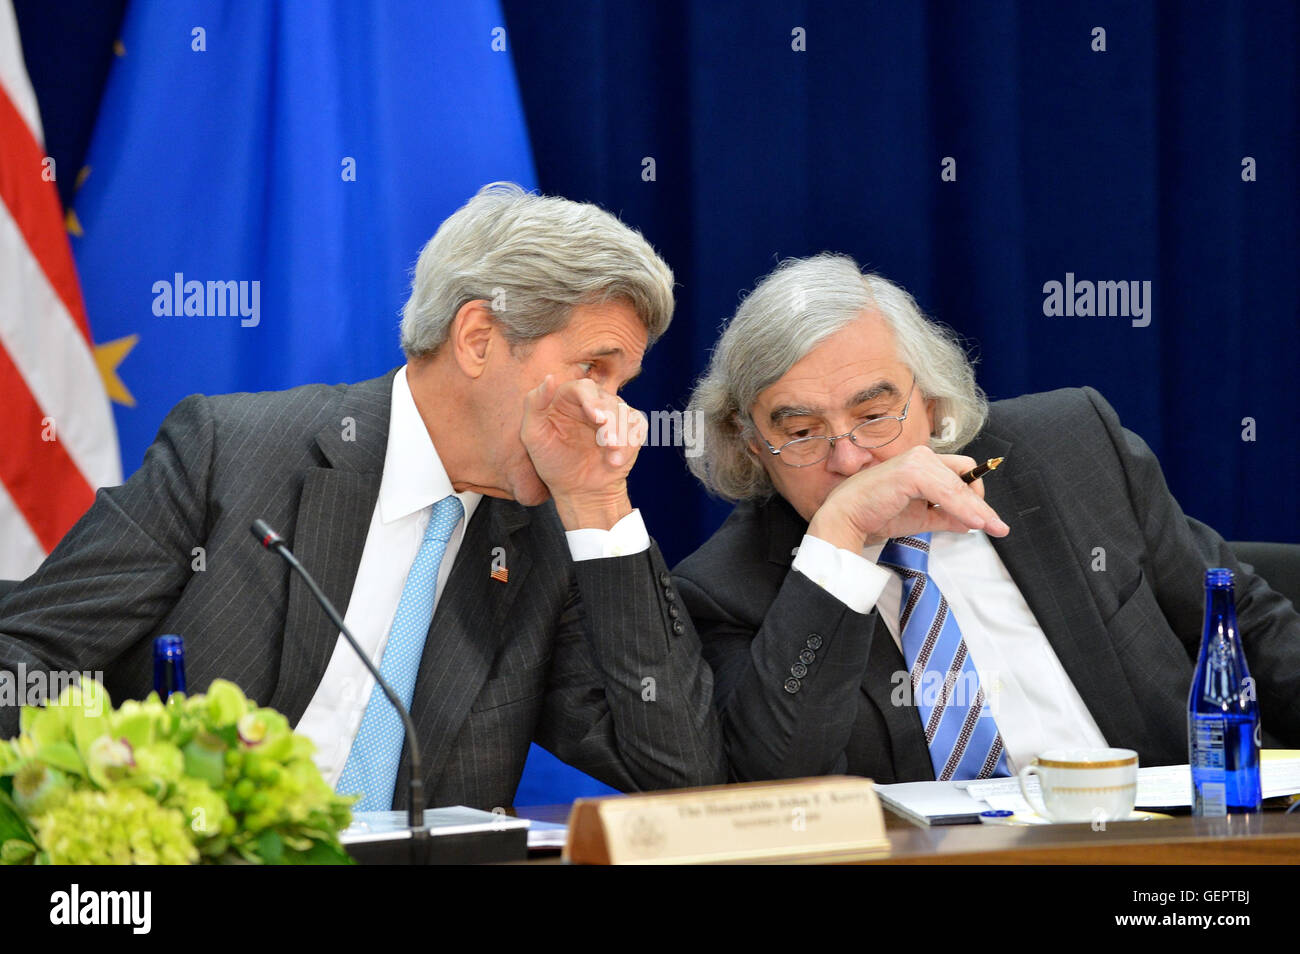 Kerry s'entretient avec le secrétaire Le secrétaire de l'Énergie, Moniz à la septième États-Unis-UE Conseil de l'énergie Réunion à Washington Banque D'Images